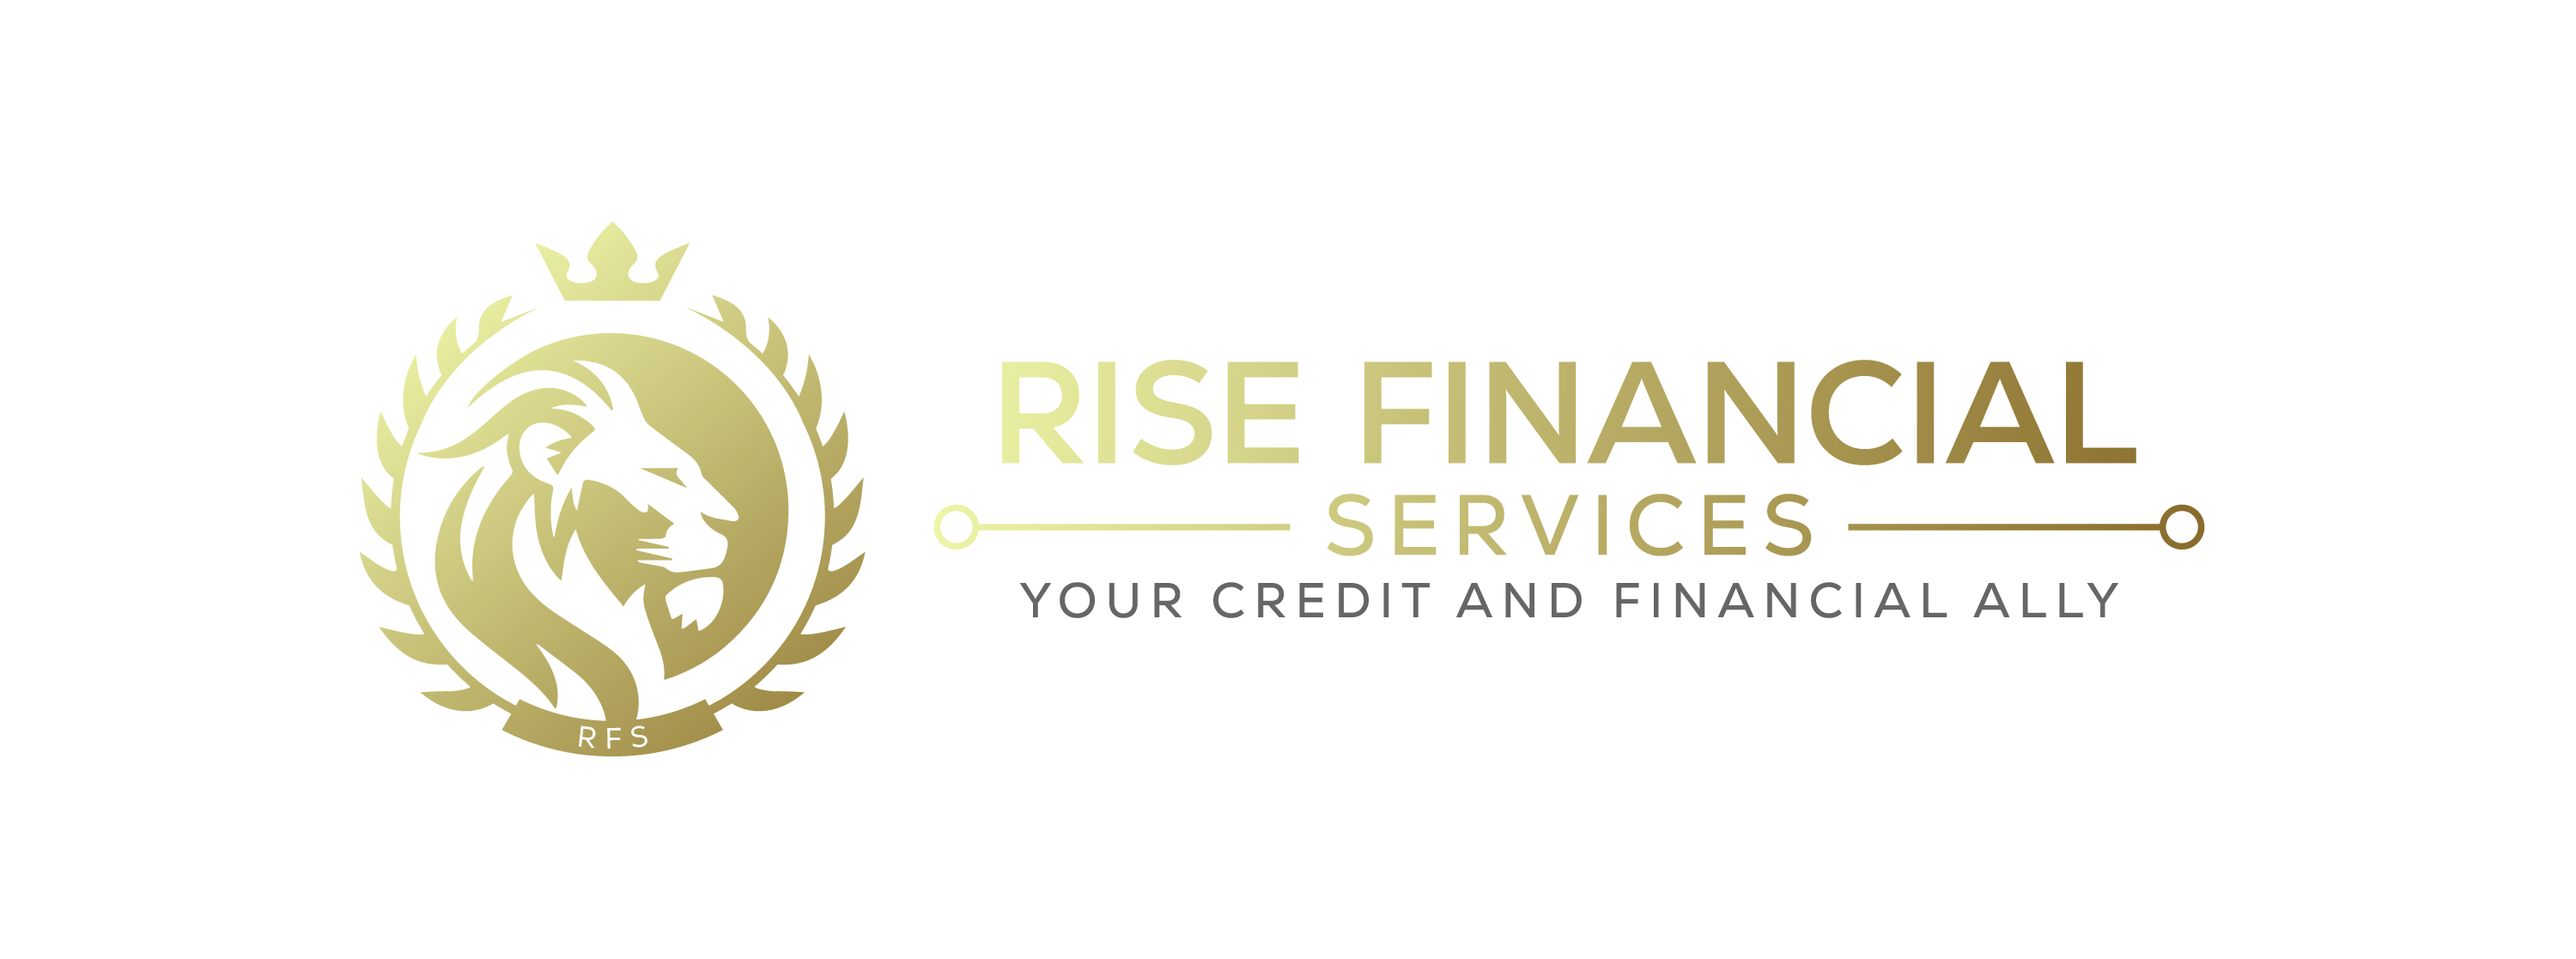 Rise Credit repair firm